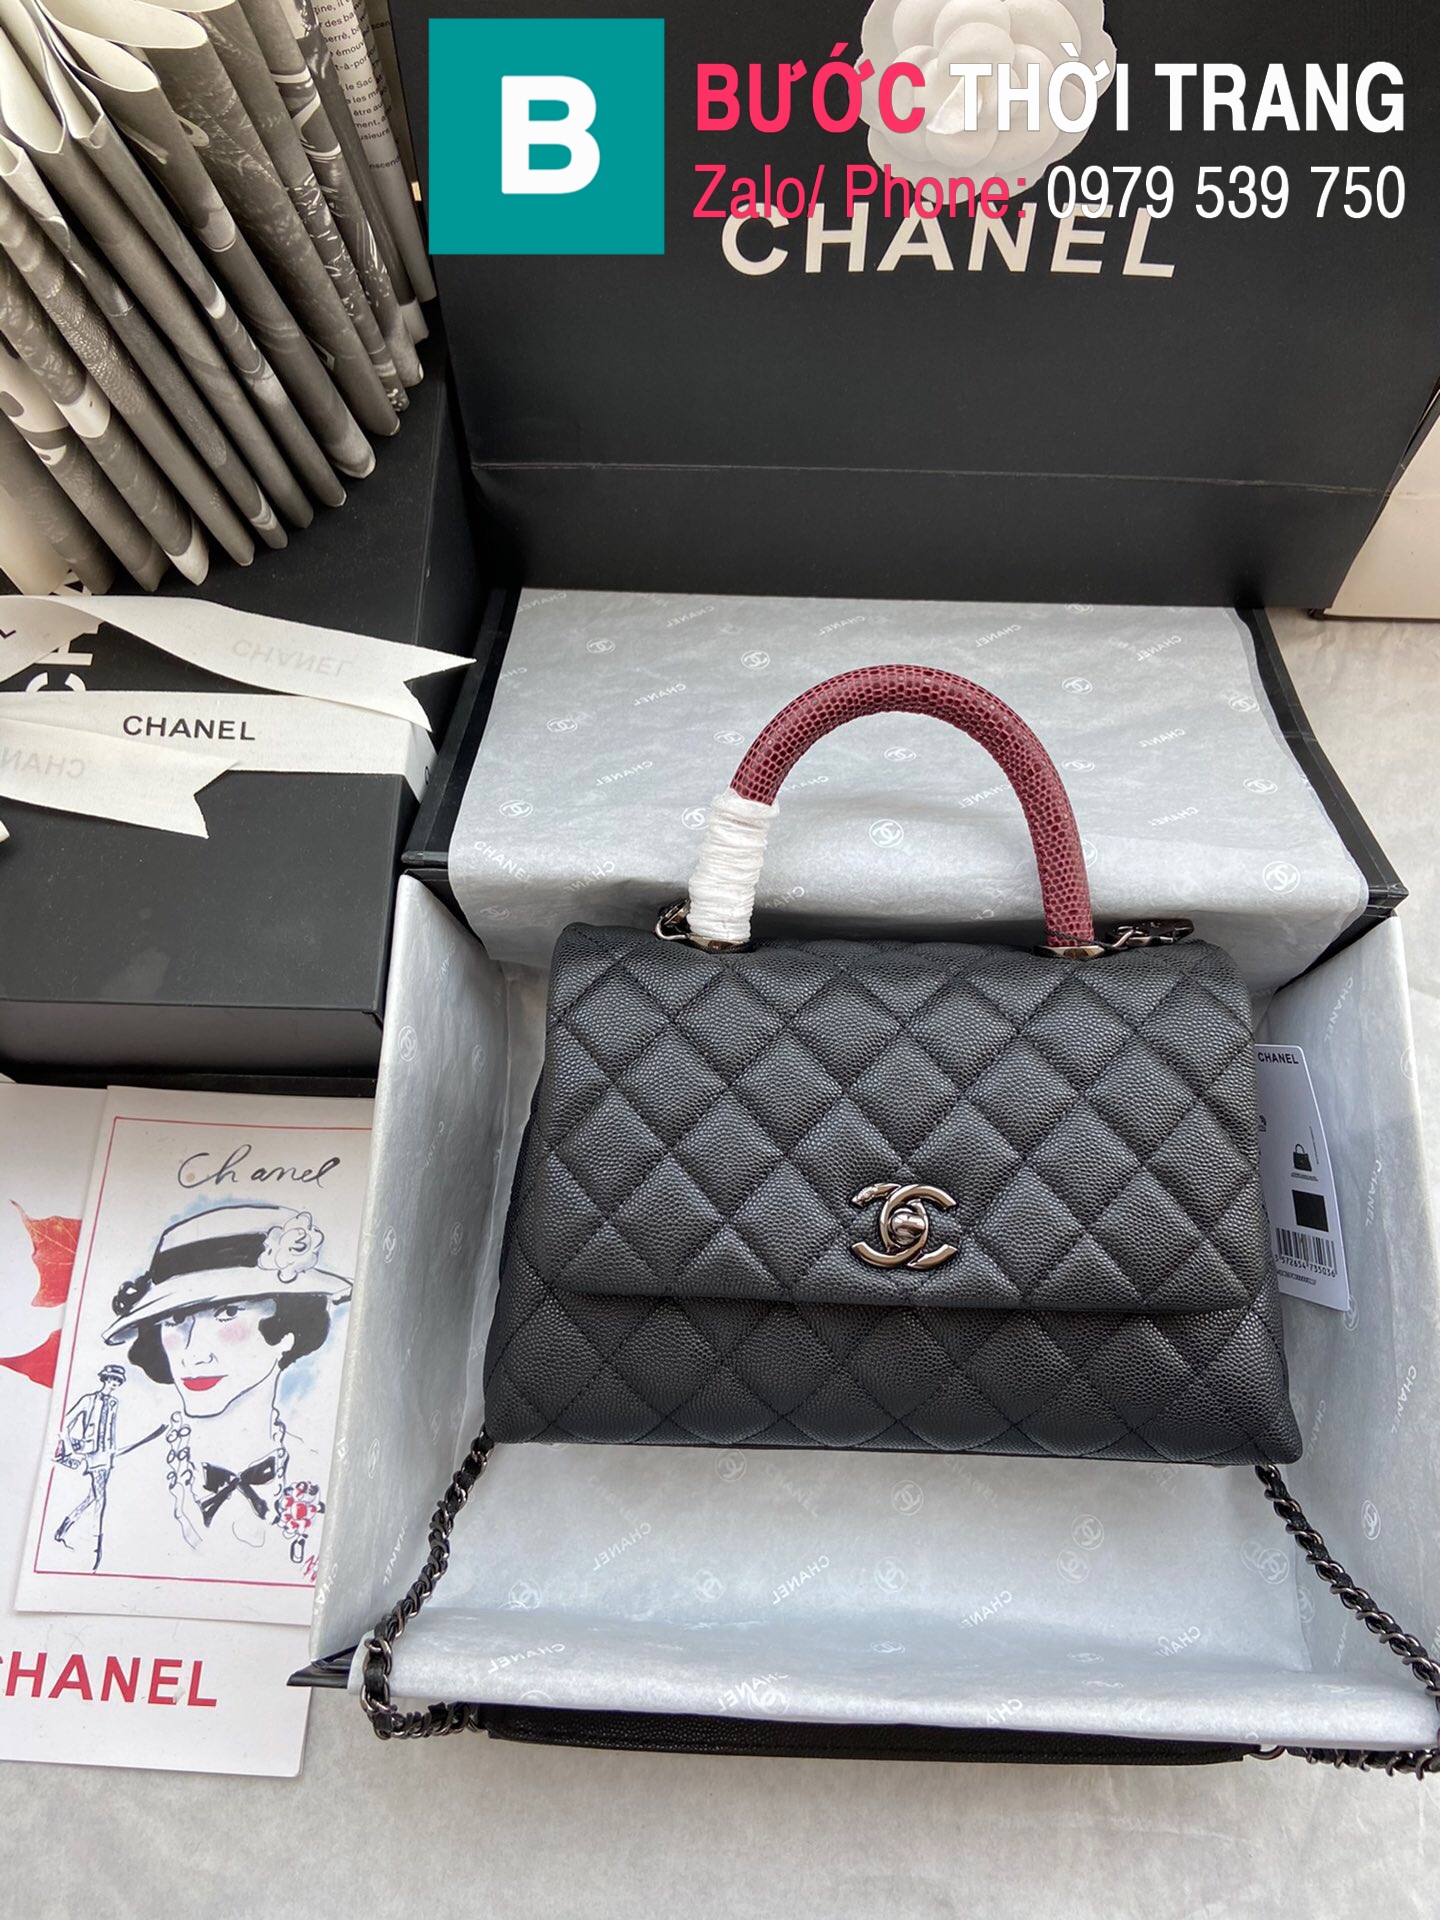 Túi xách Chanel Coco Handle Small siêu cấp da bê màu đen size 24 cm –  A92990 – Túi xách cao cấp, những mẫu túi siêu cấp, like authentic cực đẹp